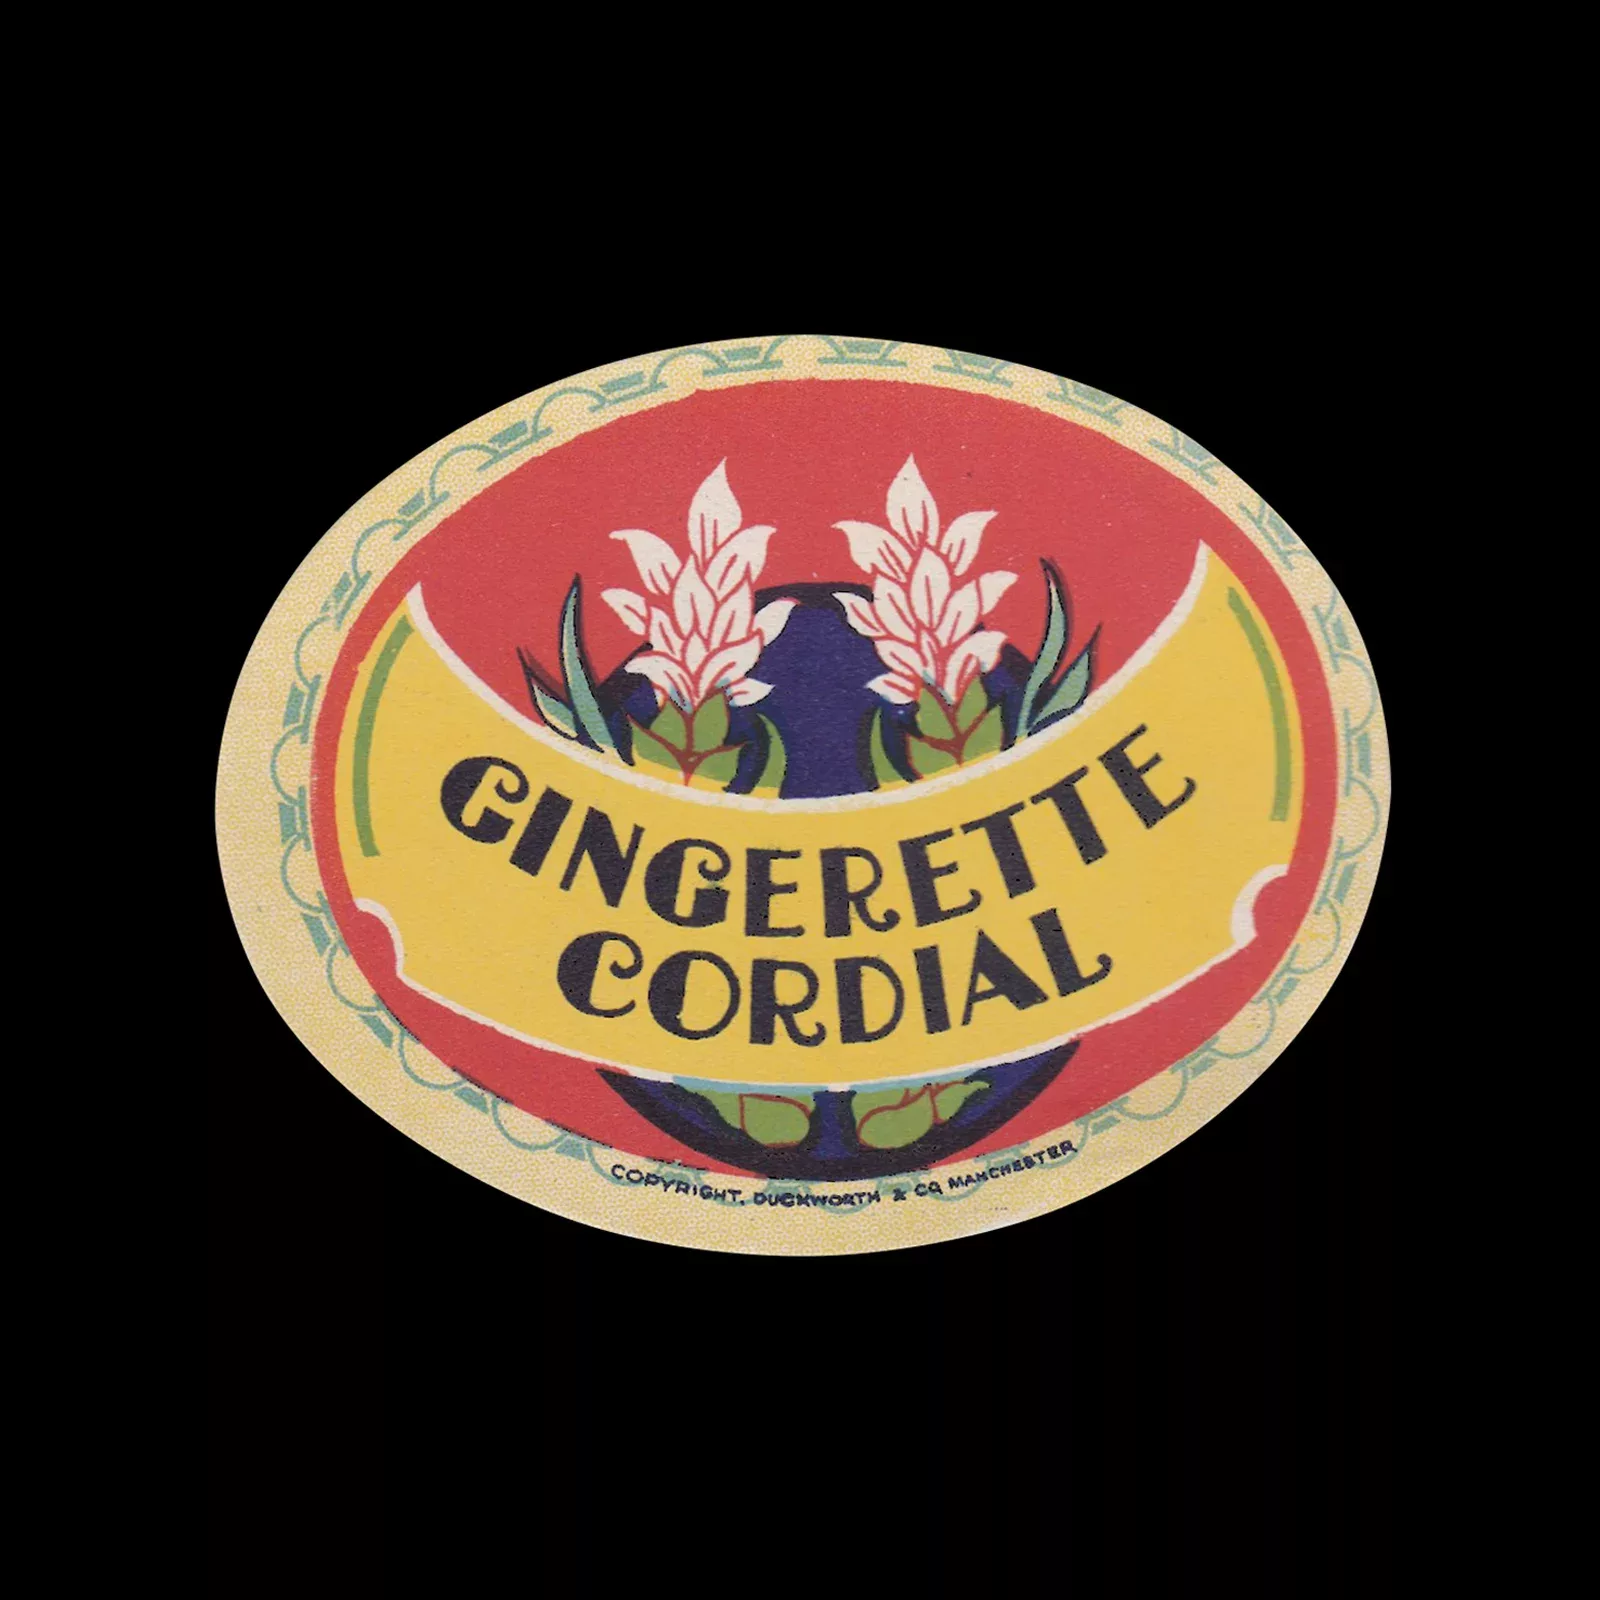 Gingerette Cordial, Fruit Drink Label